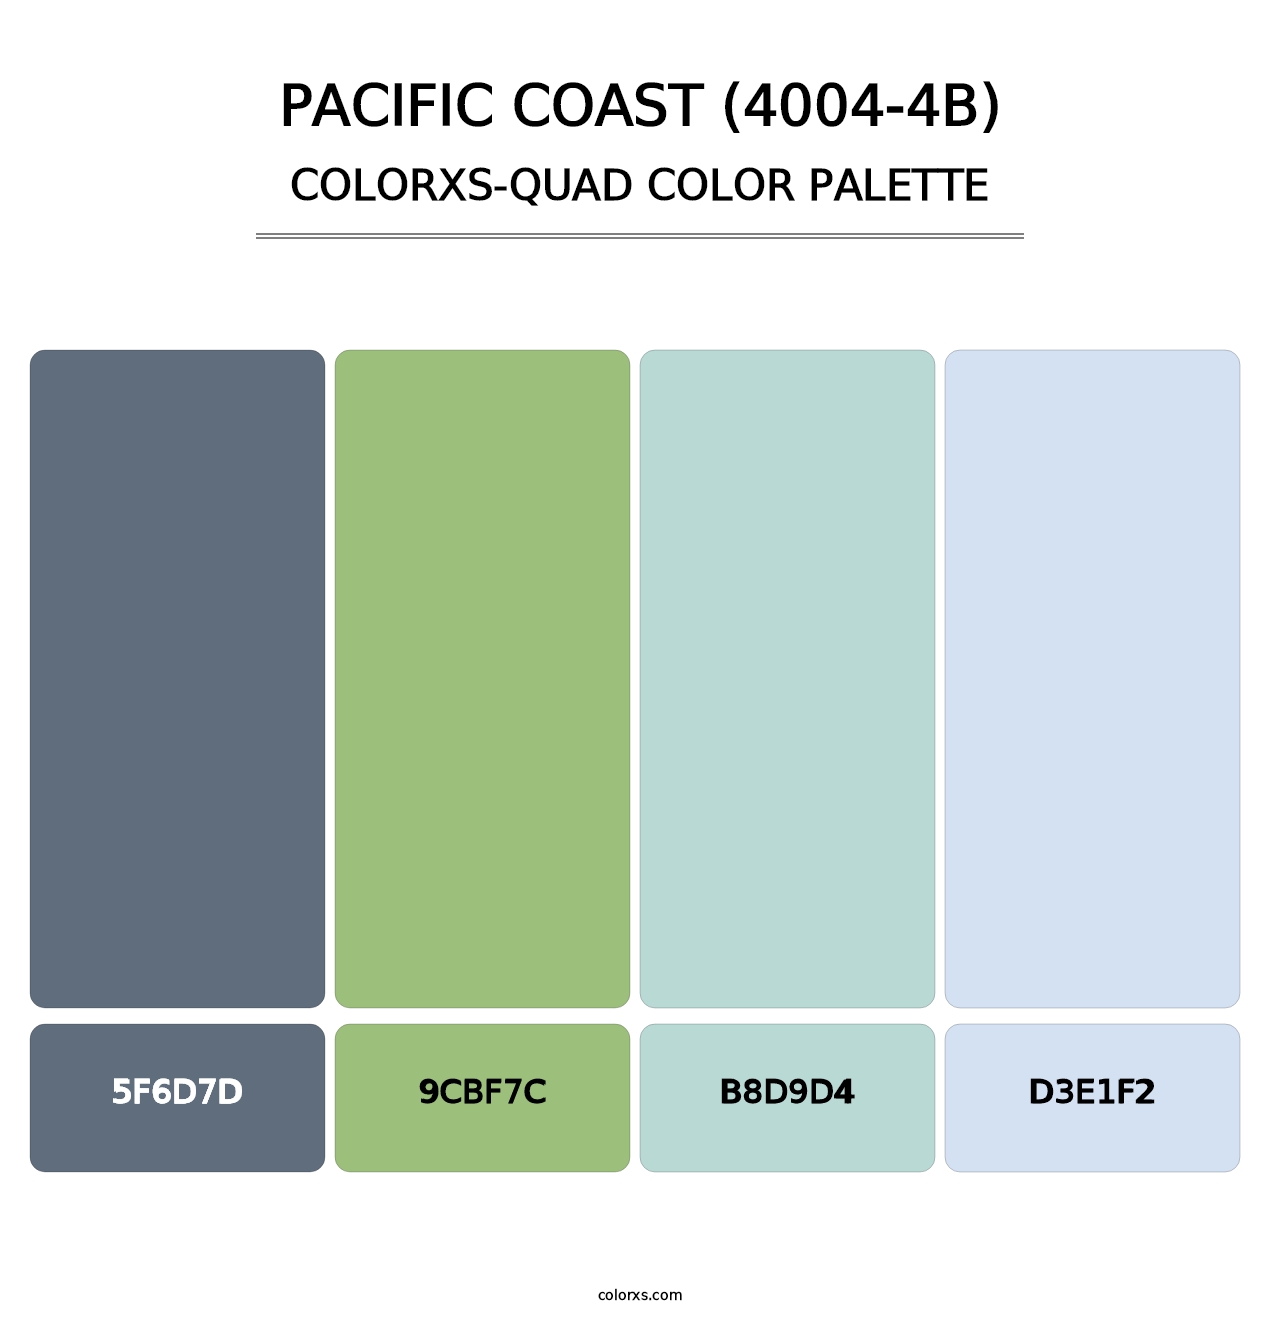 Pacific Coast (4004-4B) - Colorxs Quad Palette